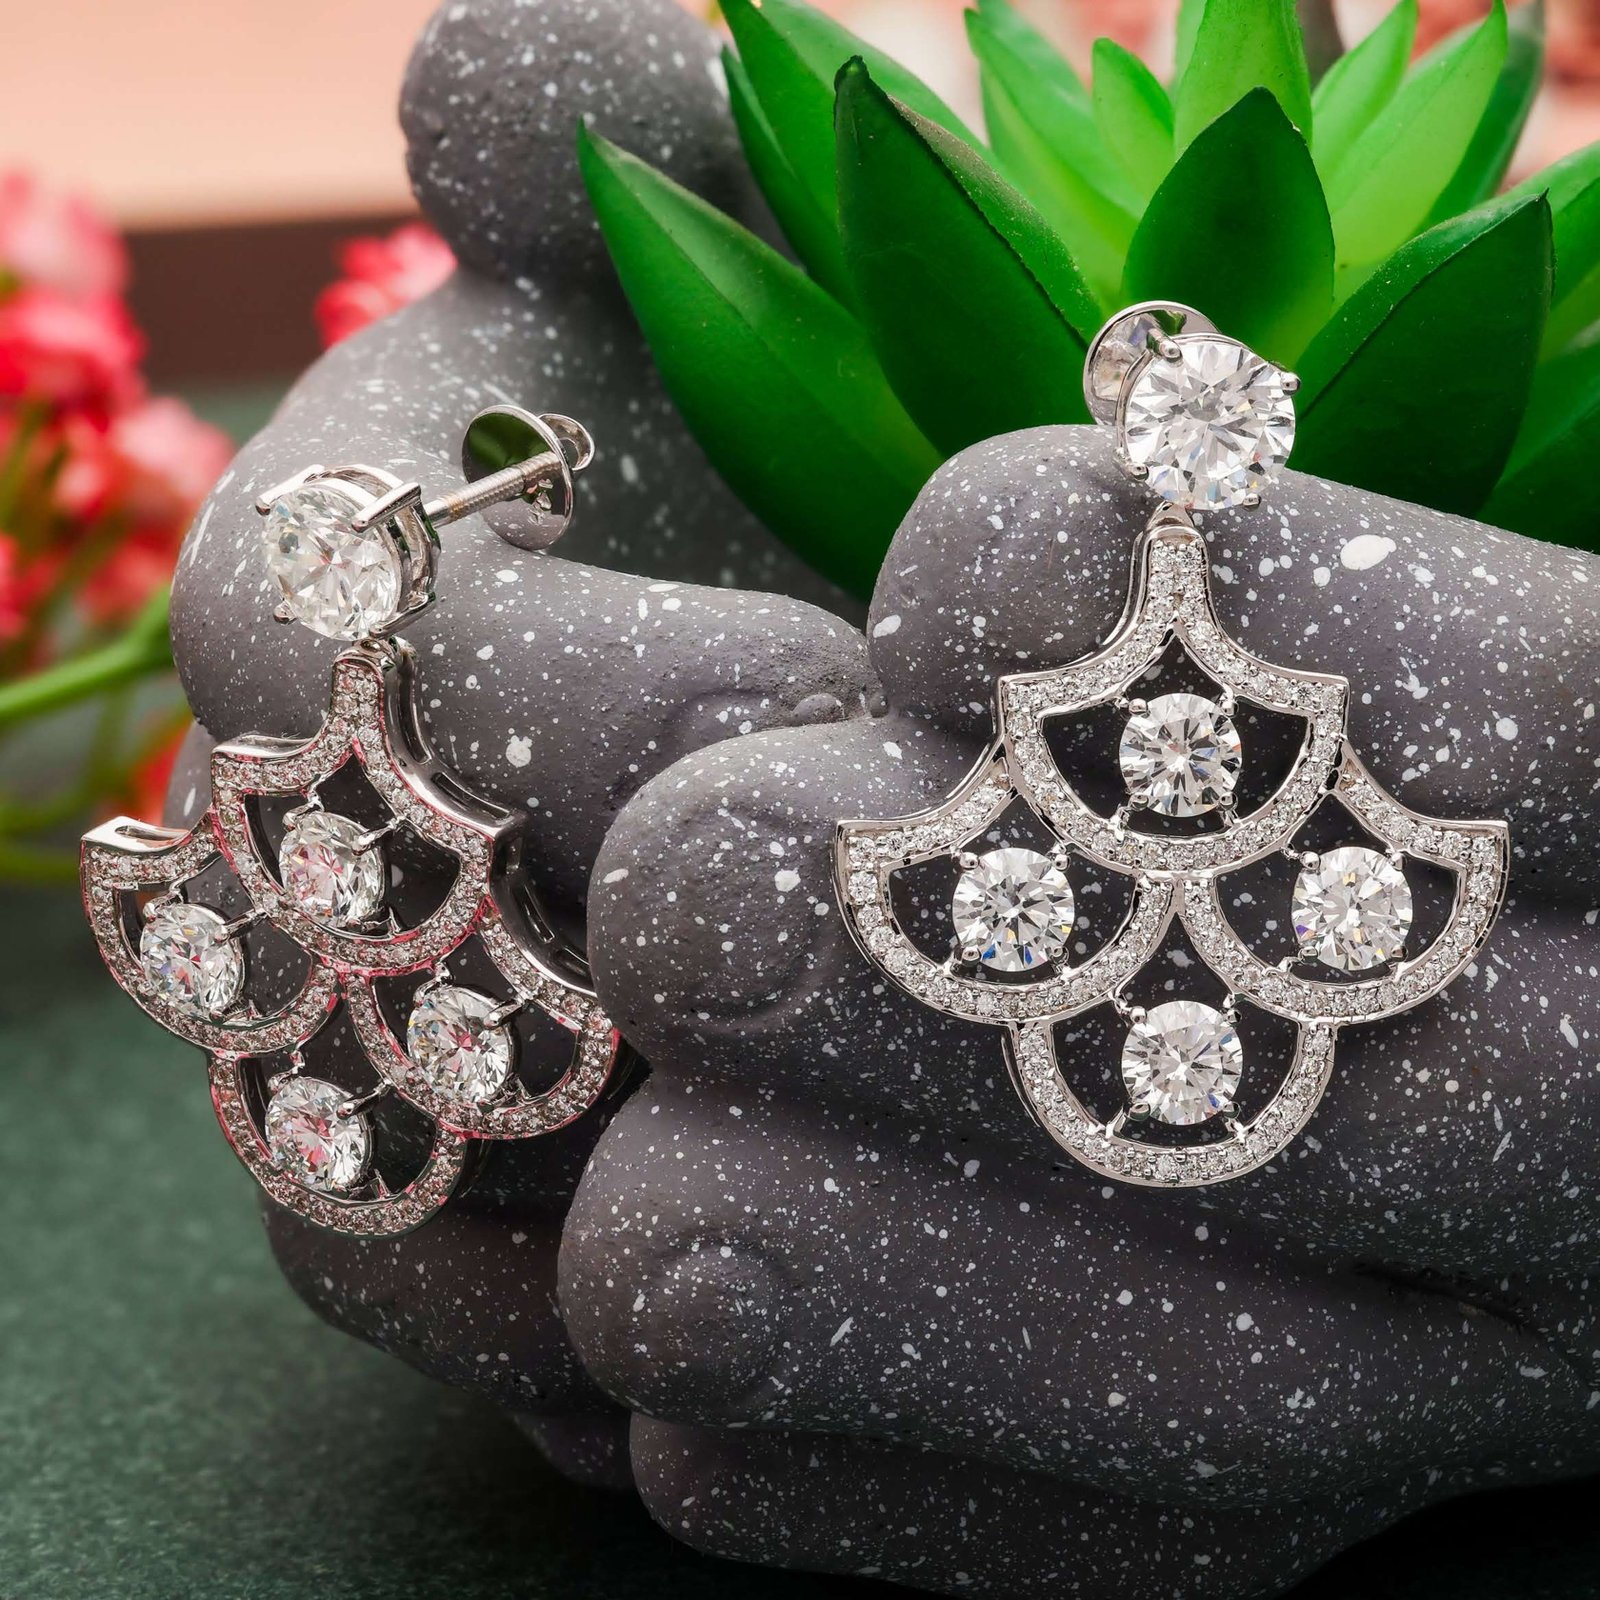 The little Chandelier Earrings Diamond Jewellery